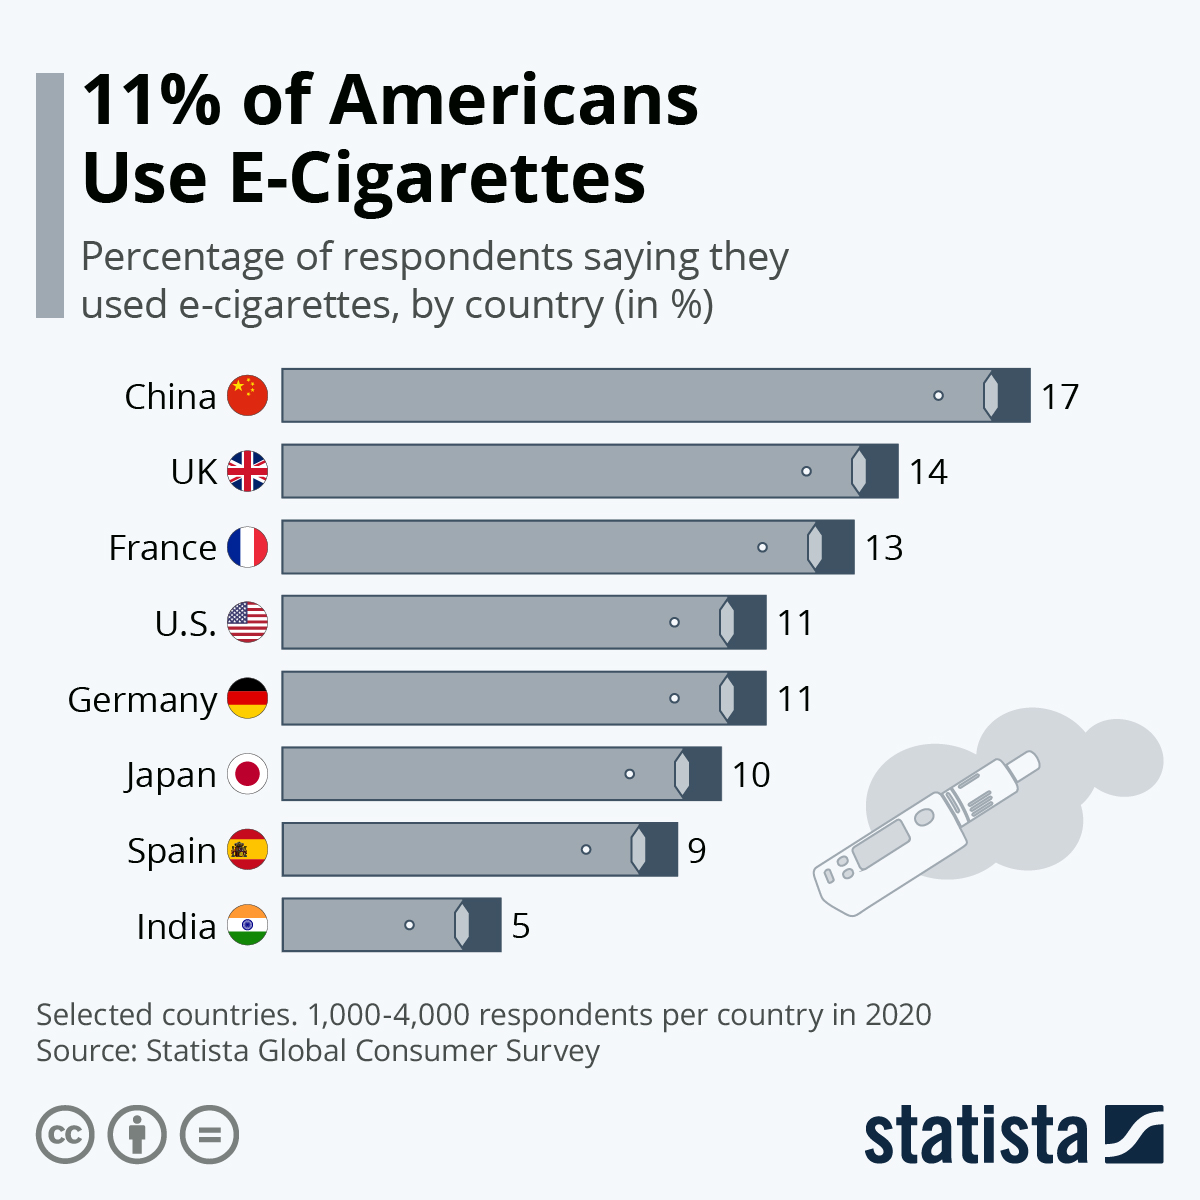 Benutzung von E-Zigaretten unter jungen Menschen in den USA